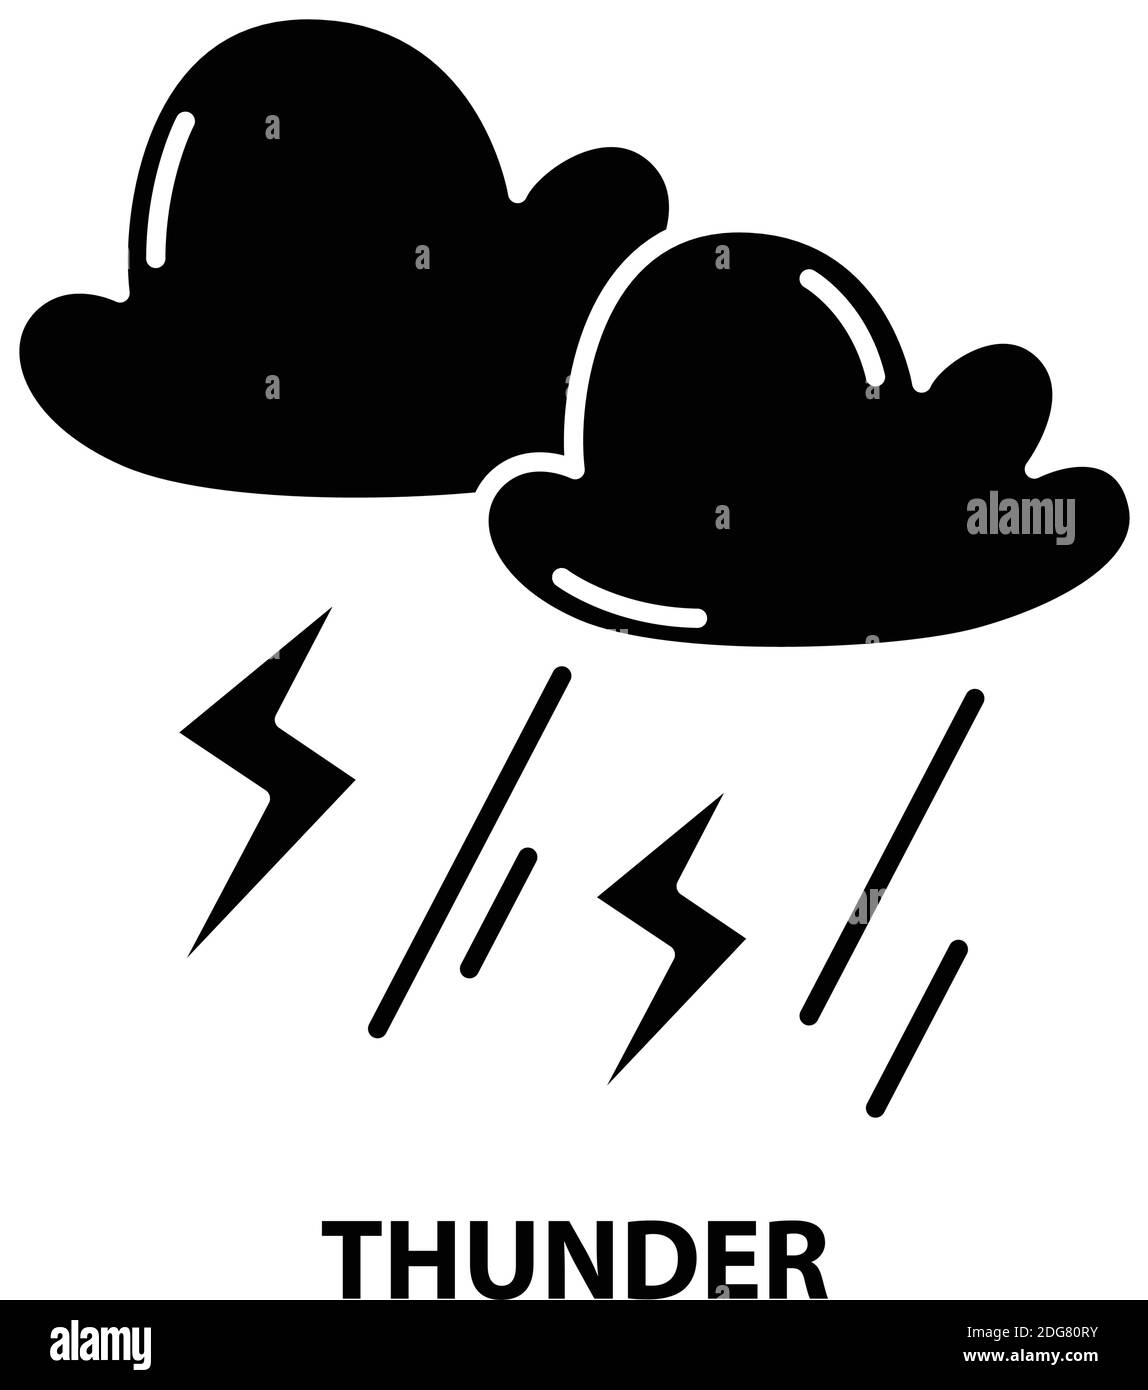 icona thunder, segno vettoriale nero con tratti modificabili, illustrazione del concetto Illustrazione Vettoriale